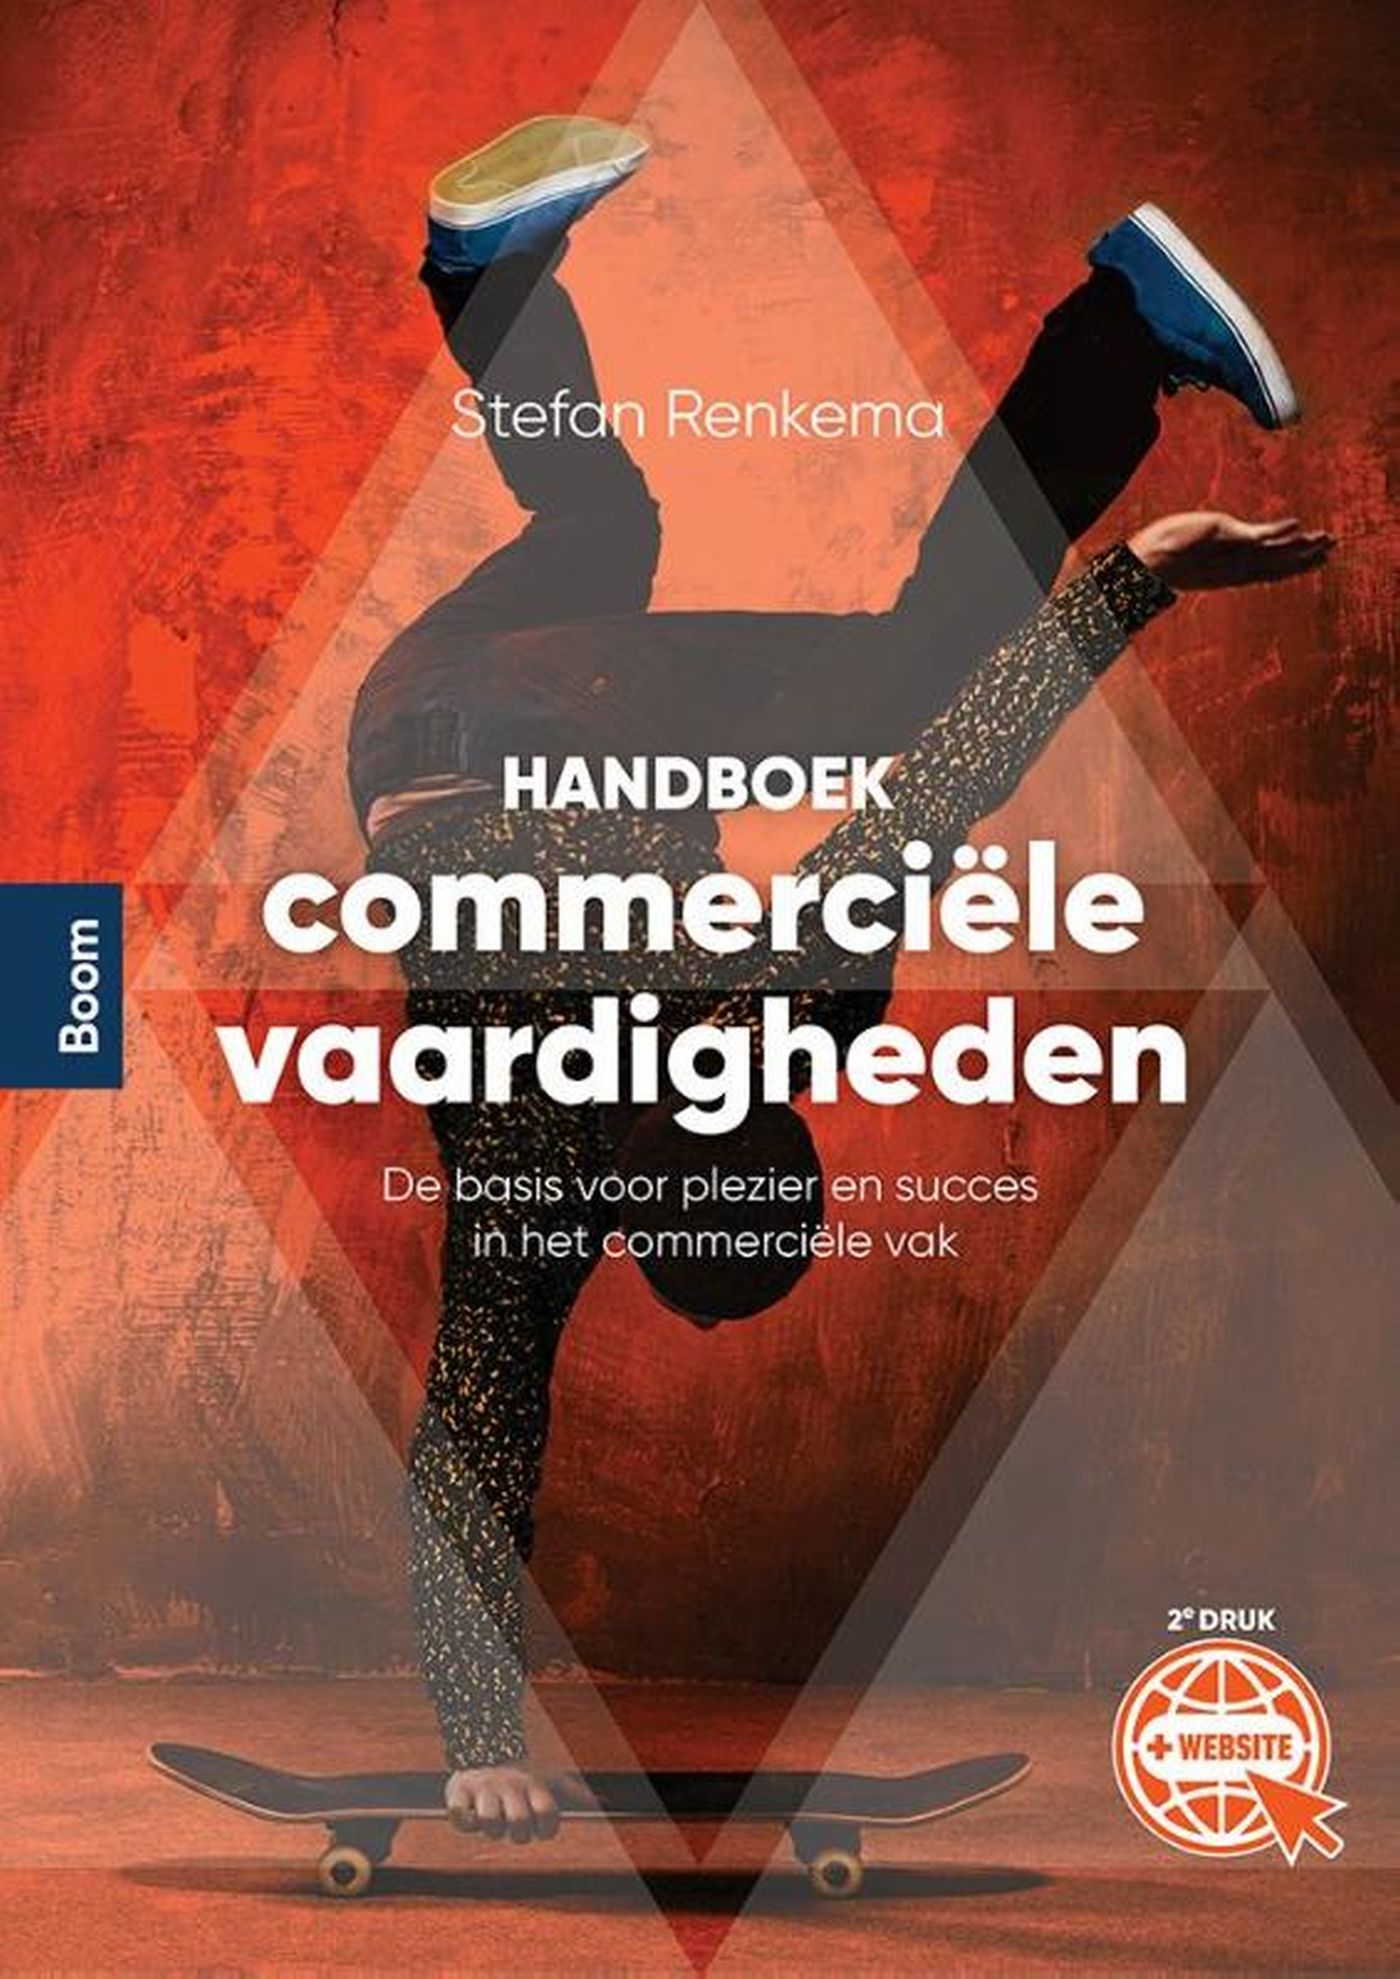 Handboek commerciële vaardigheden (Ebook)